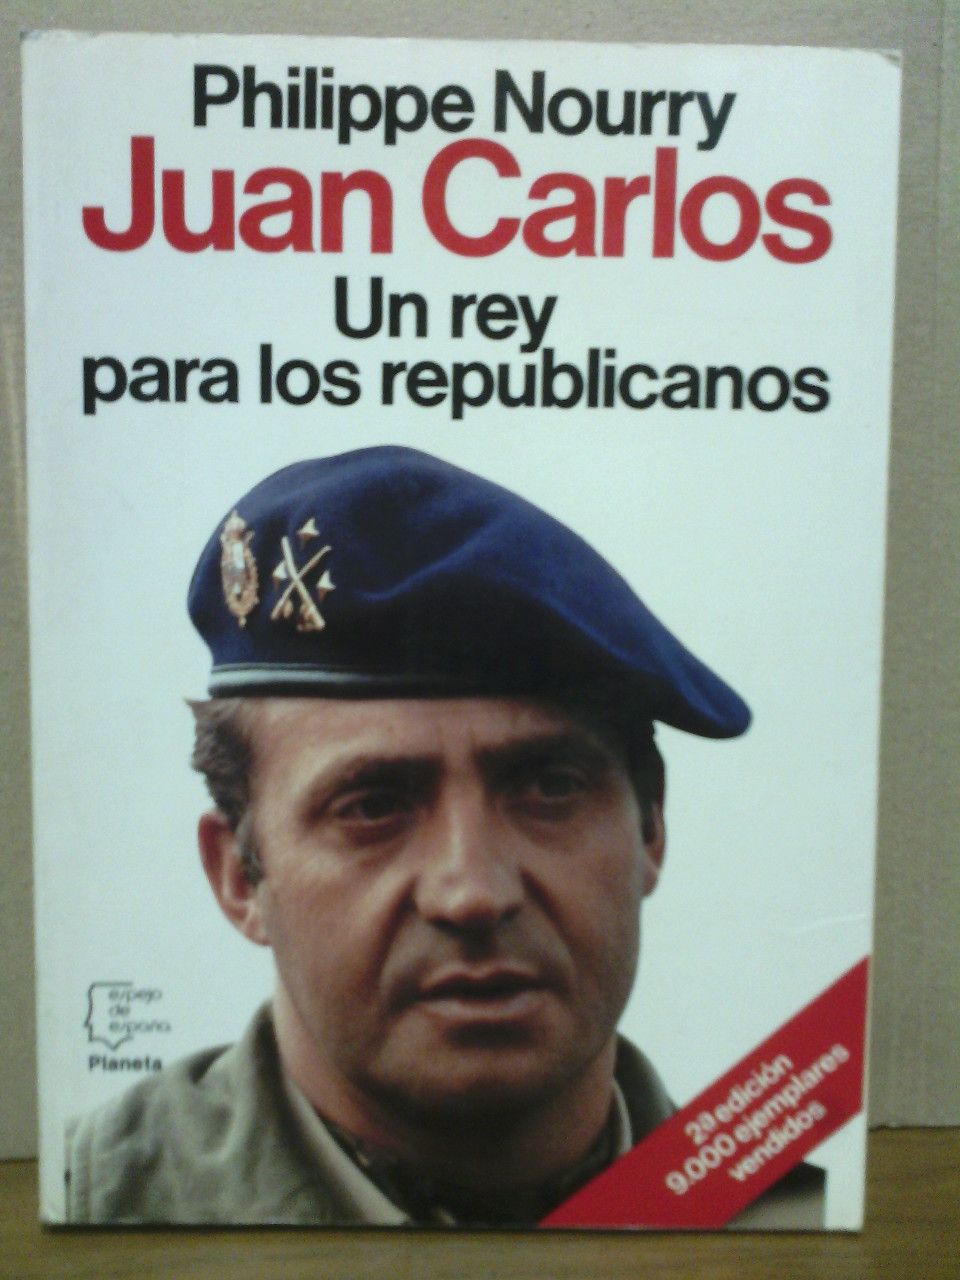 NOURRY, Philippe - Juan Carlos: Un rey para los republicanos / Prol. de Jos Mario Armero; Traduc. de Vctor Alba